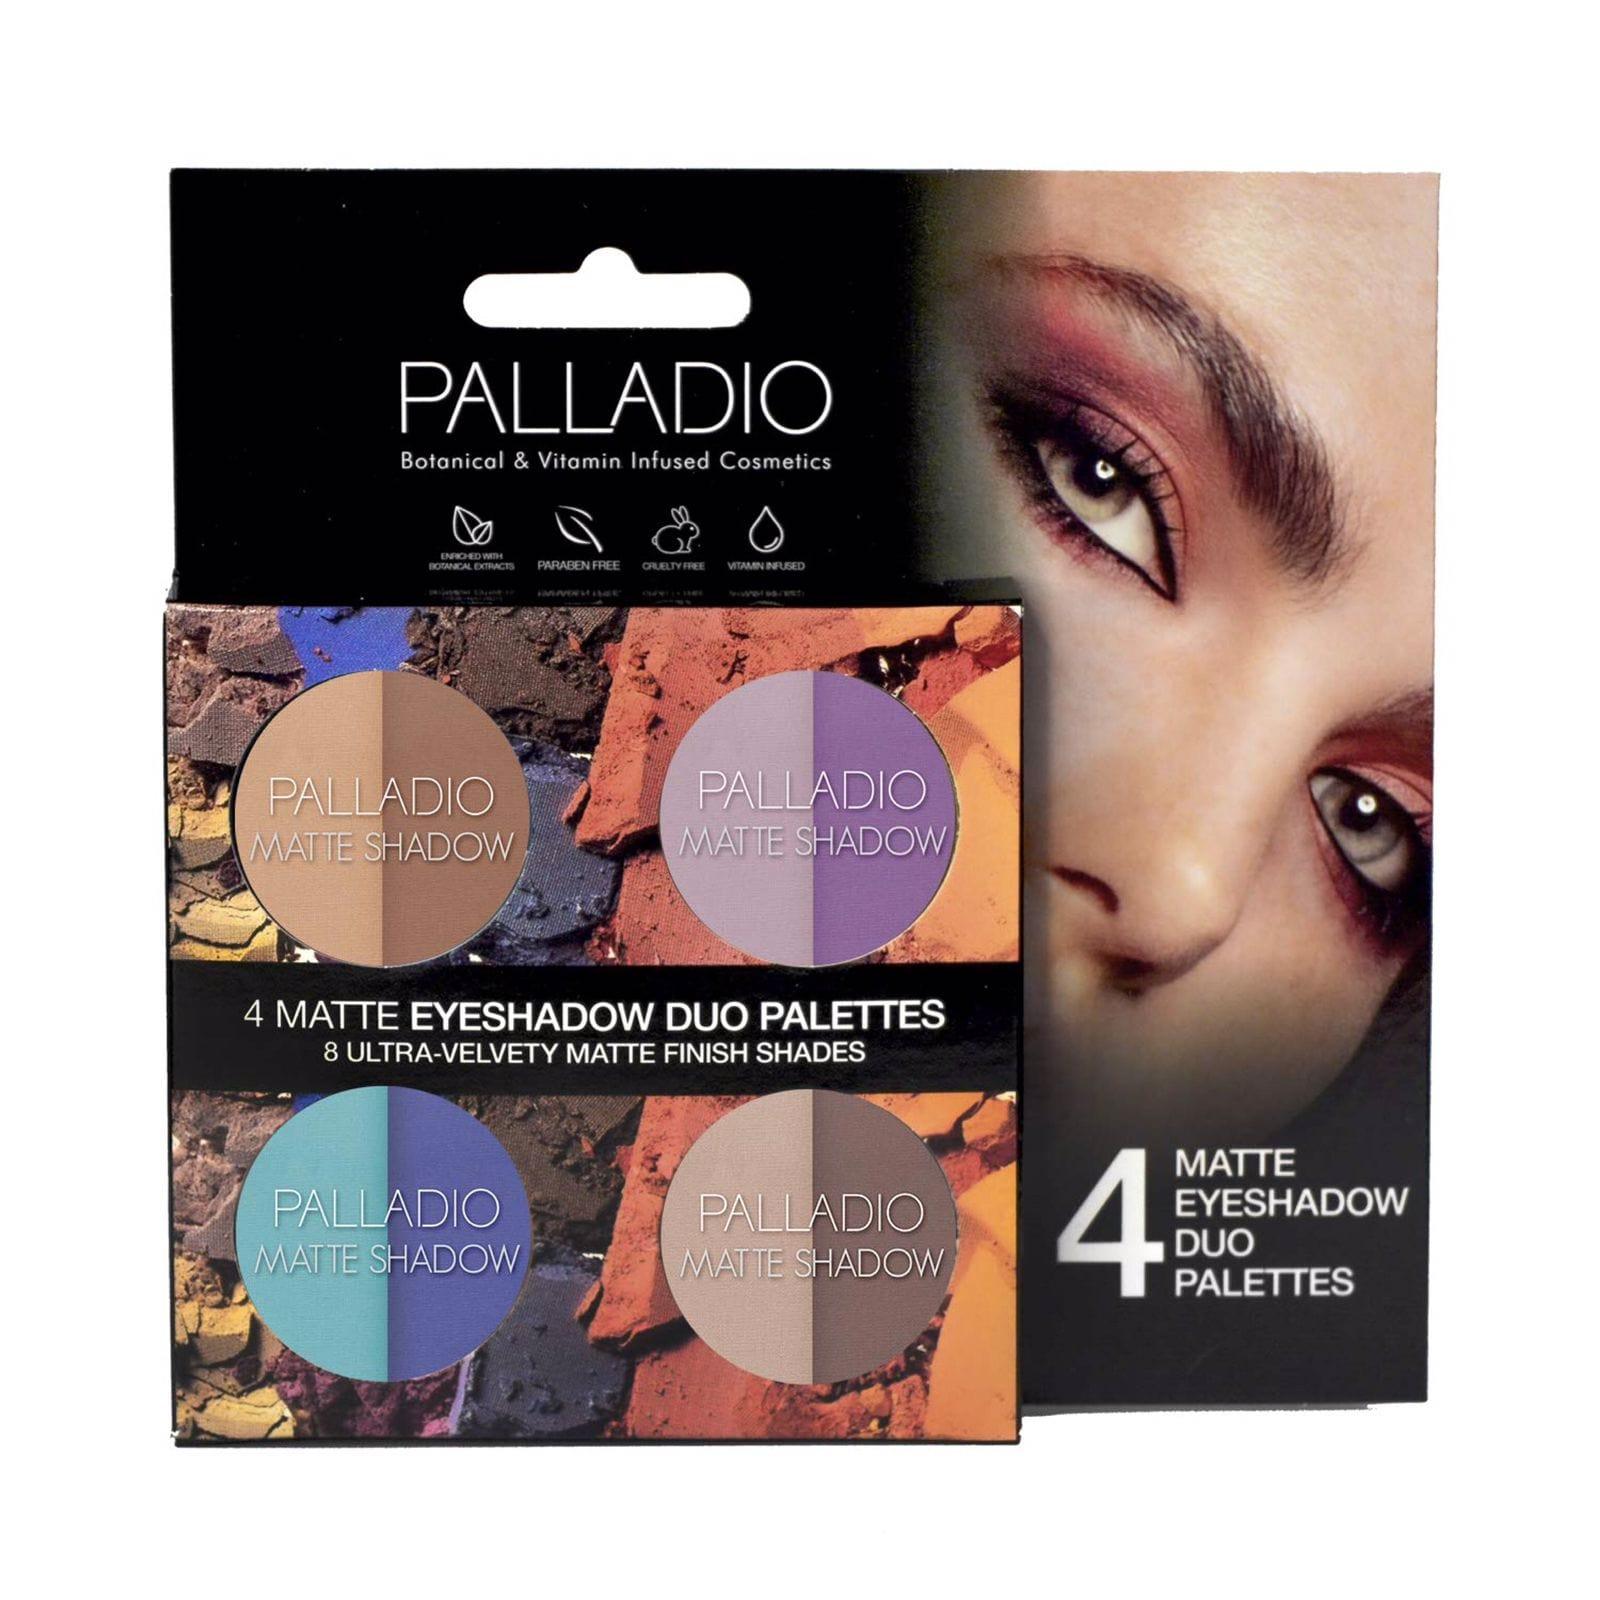 Palladio 4 Matte Eyeshadow Duo Palettes